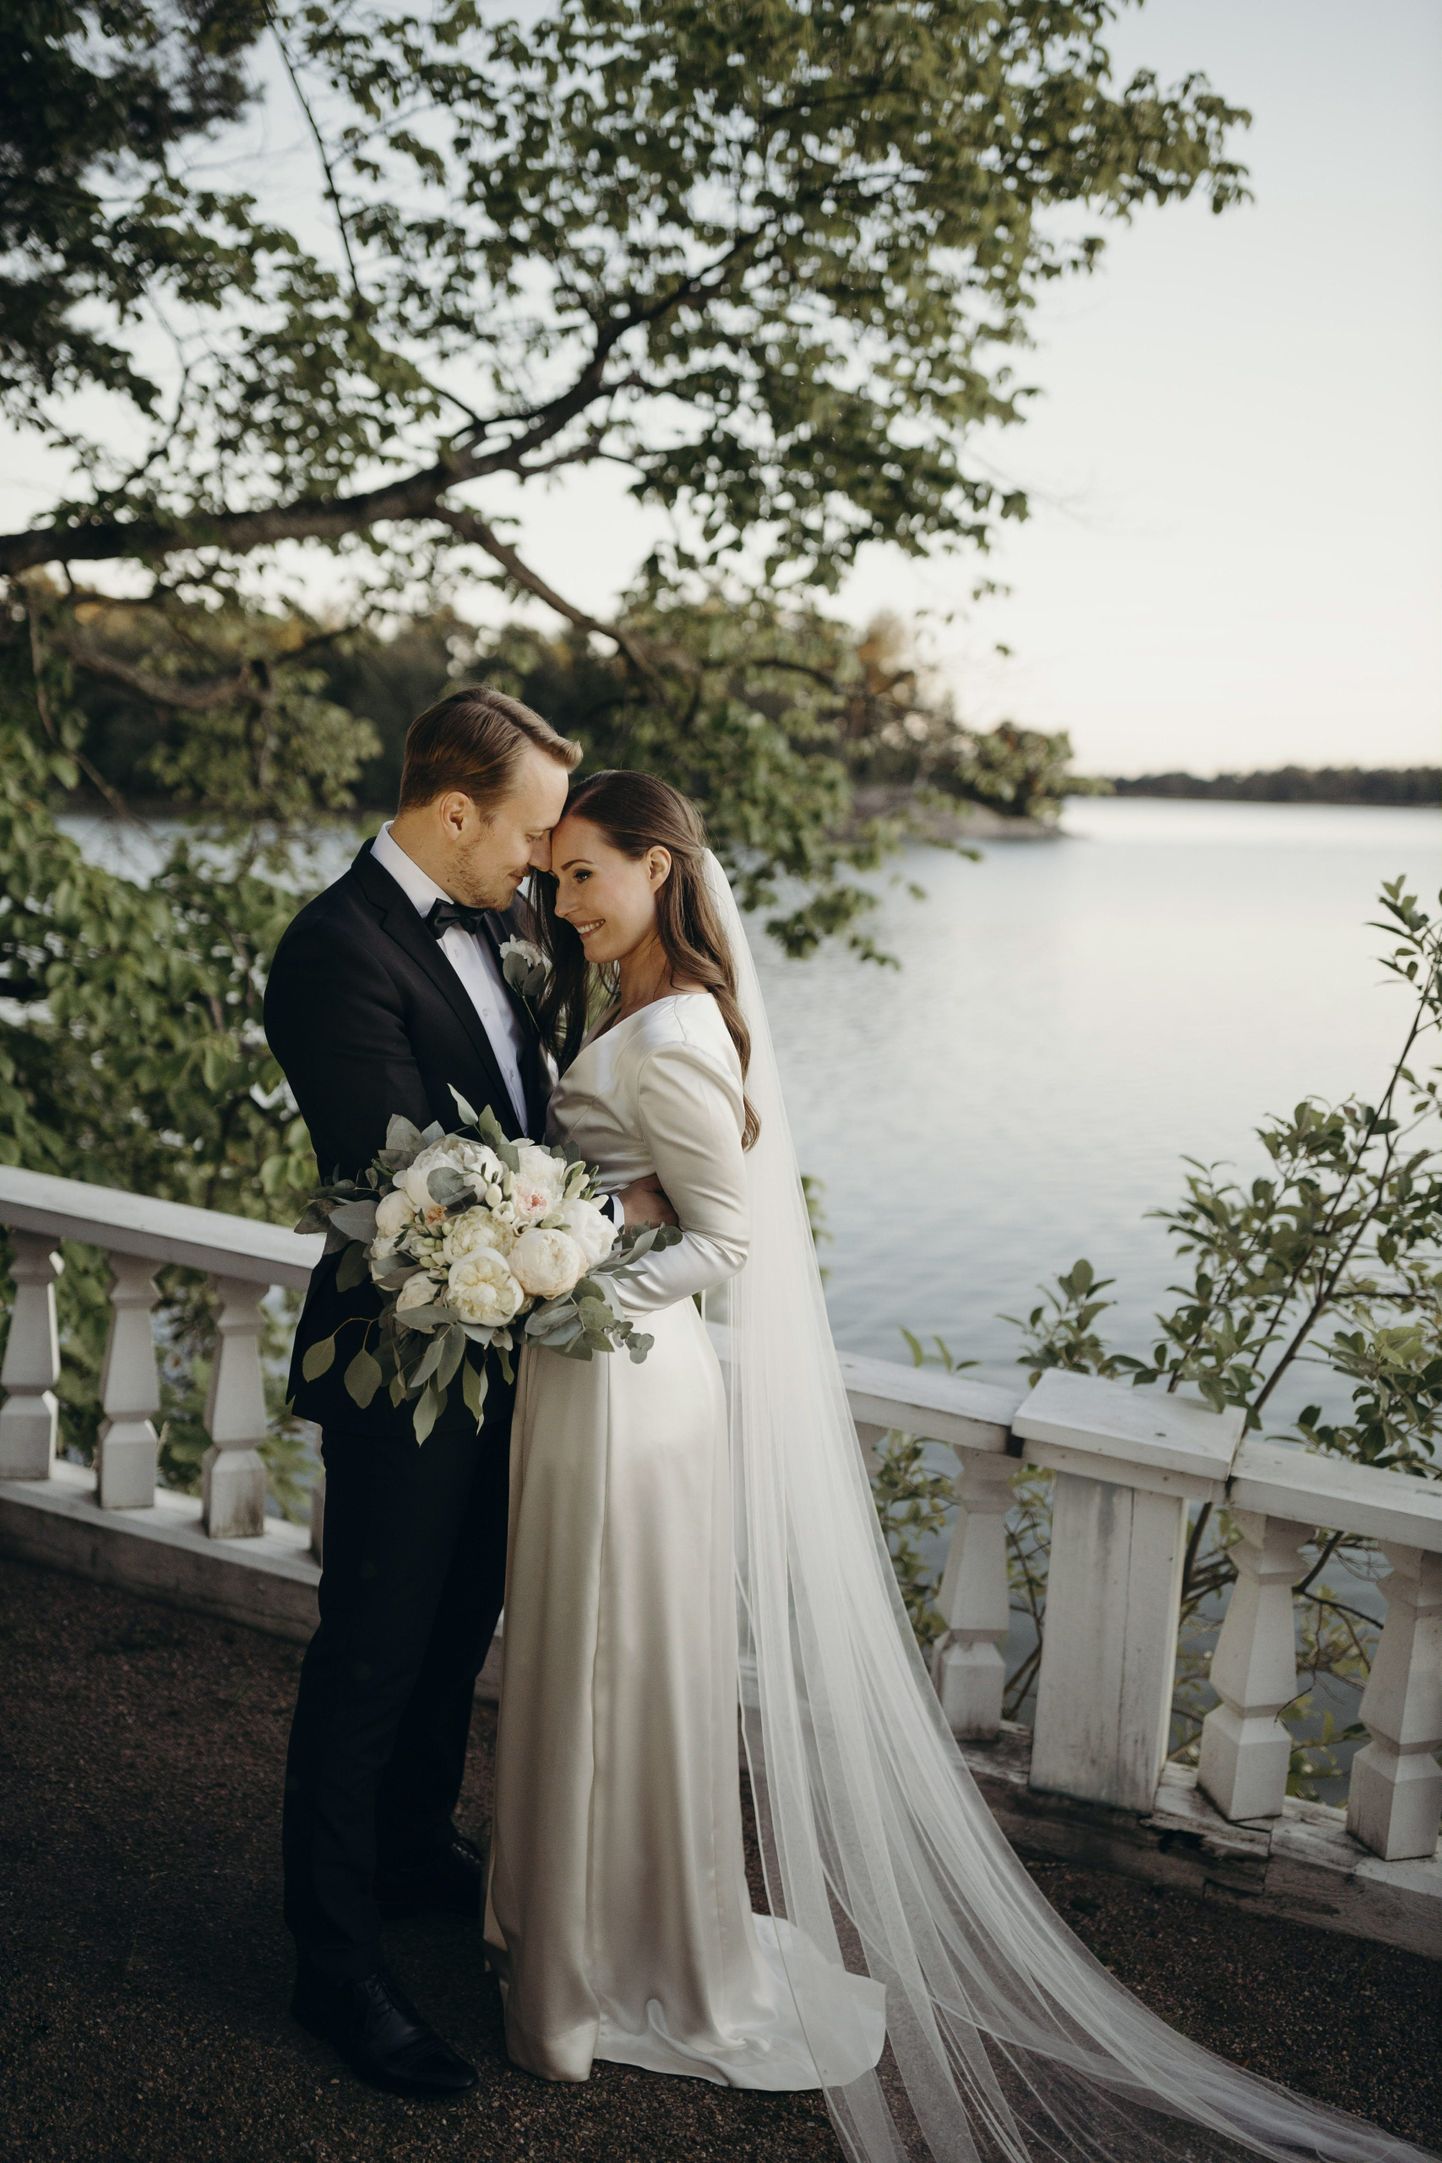 Soome peaminister Sanna Marin abiellus oma kauaaegse elukaaslase Markus Räikköneniga.